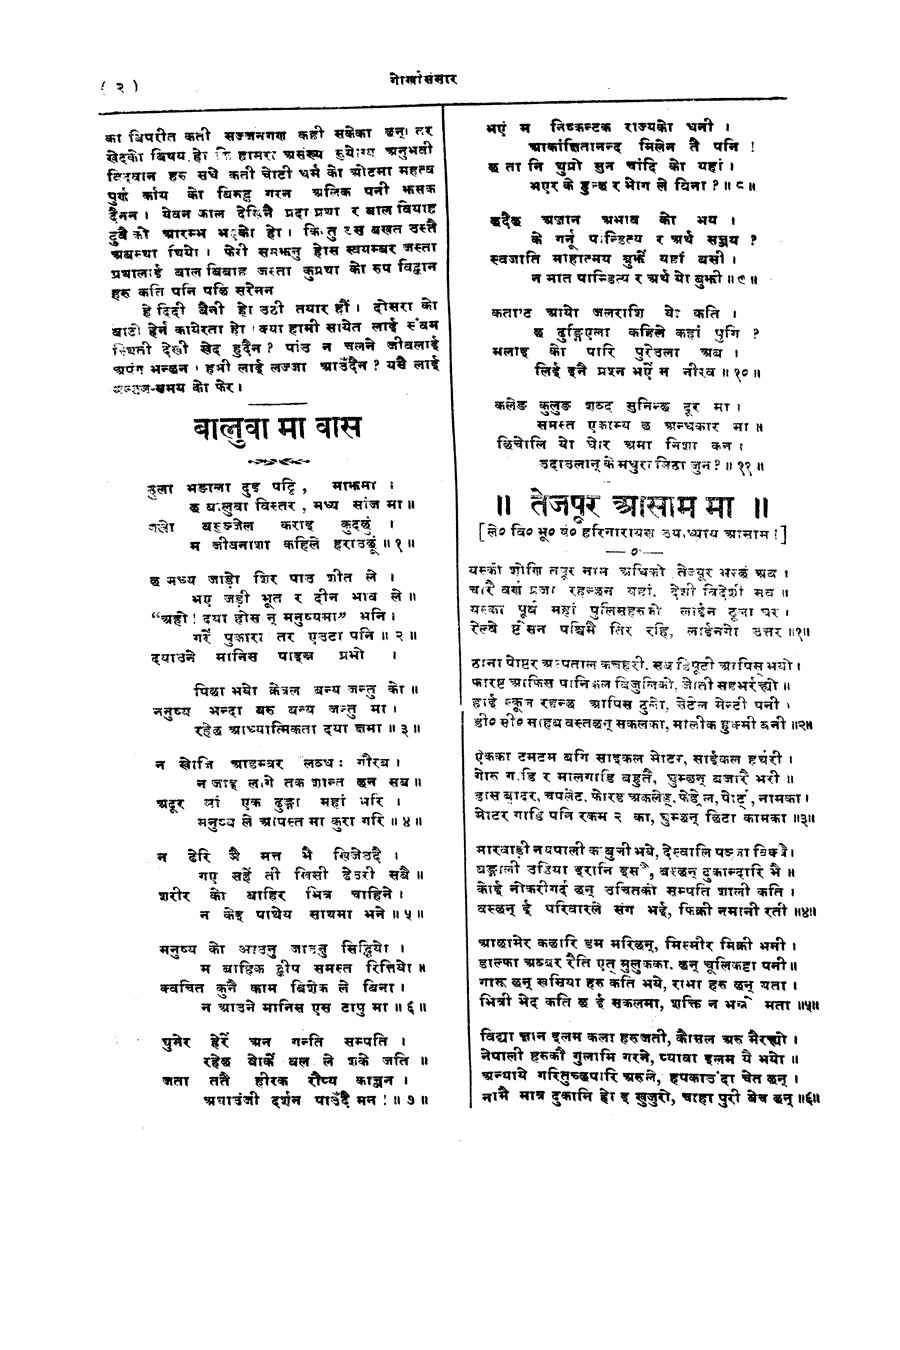 Gorkha Sansar, 13 April 1928, page 2